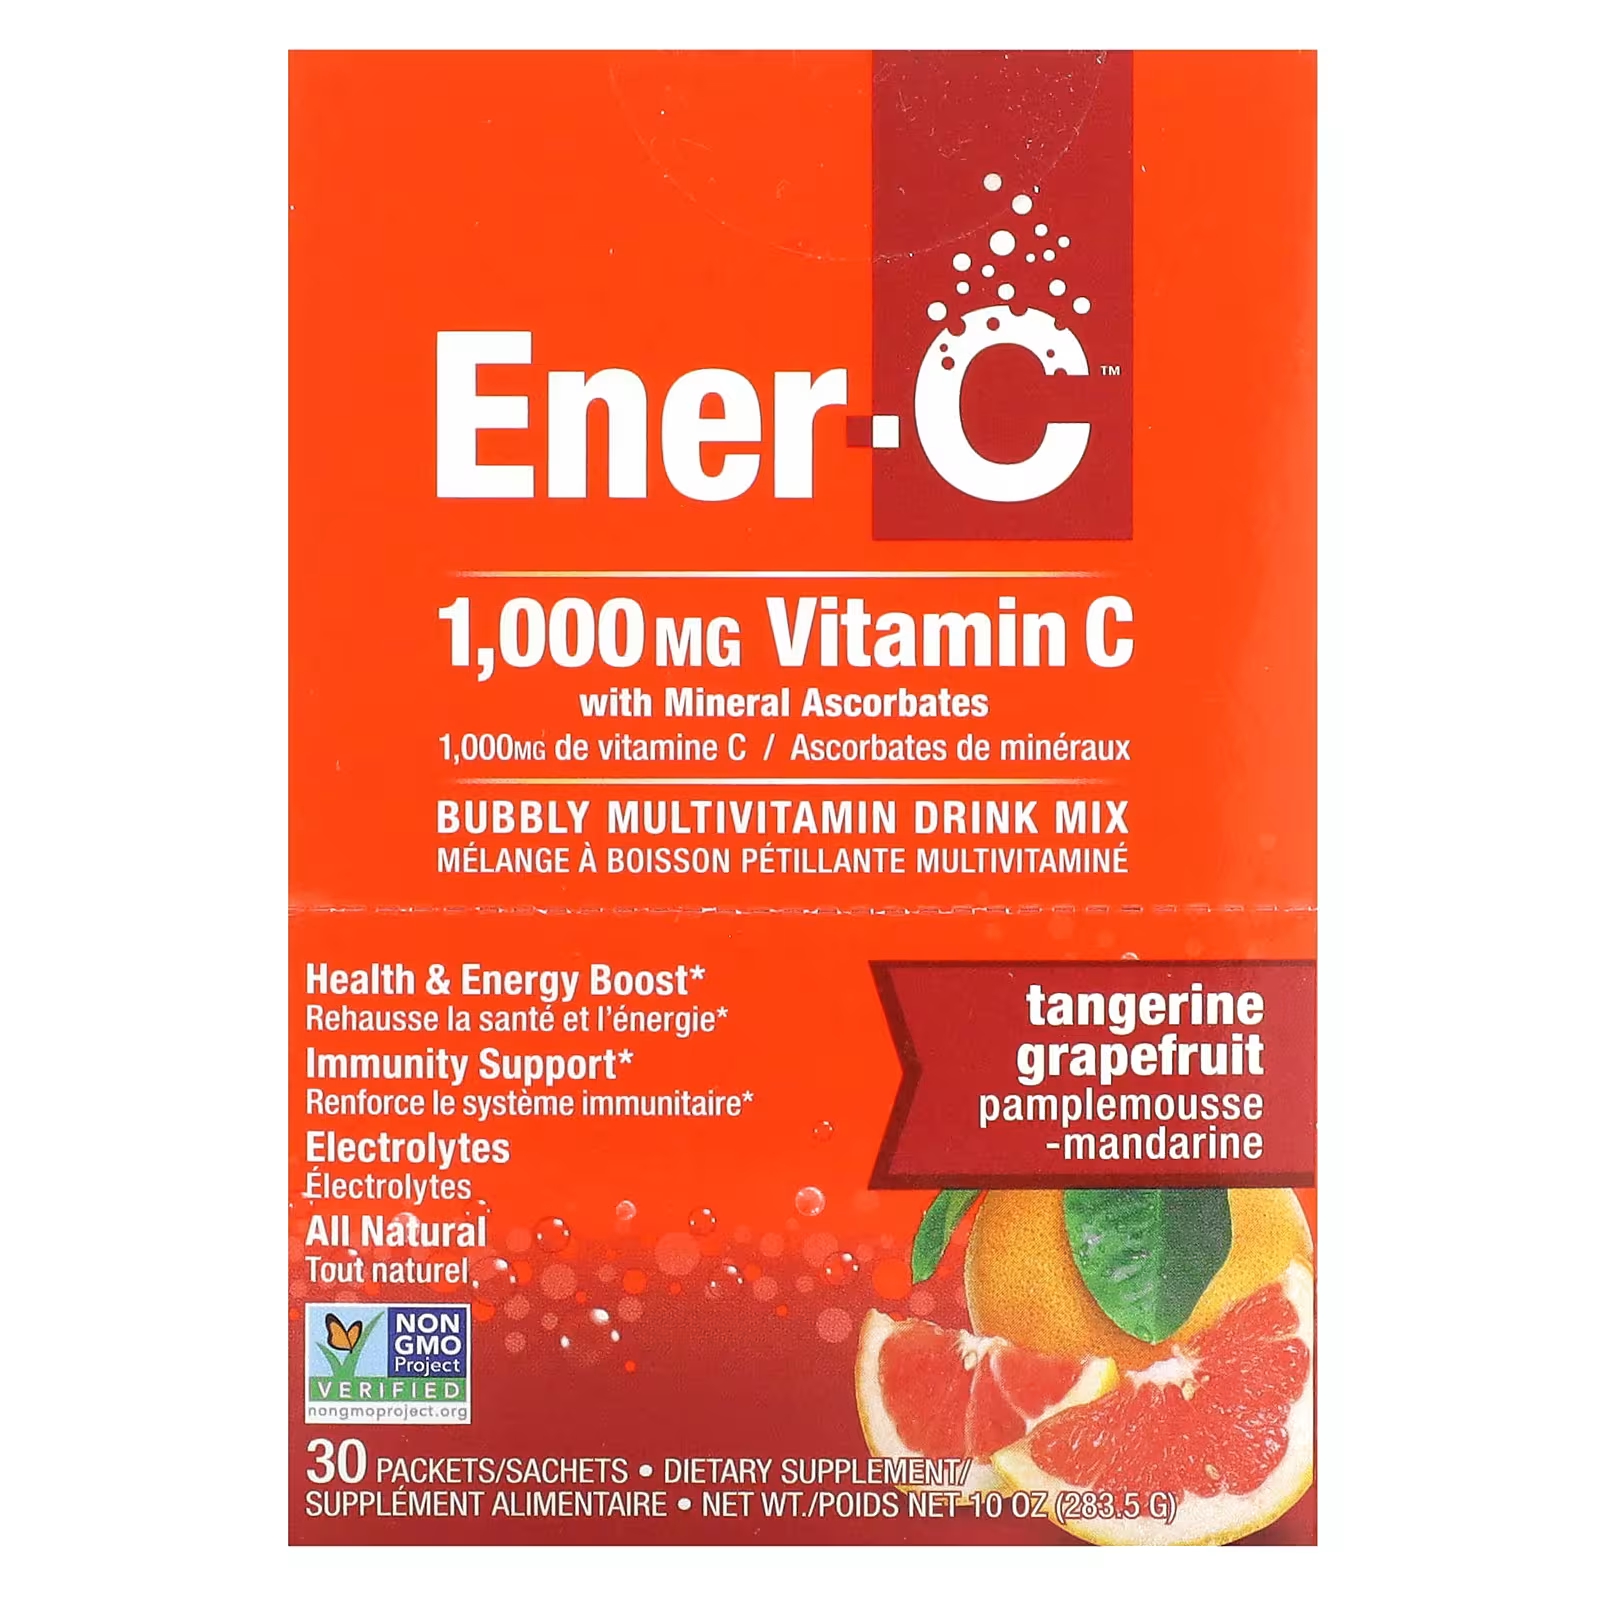 Витамин C Ener-C Bubble Multivitamin Drink Mix Мандарин Грейпфрут 1000 мг, 30 пакетов цена и фото